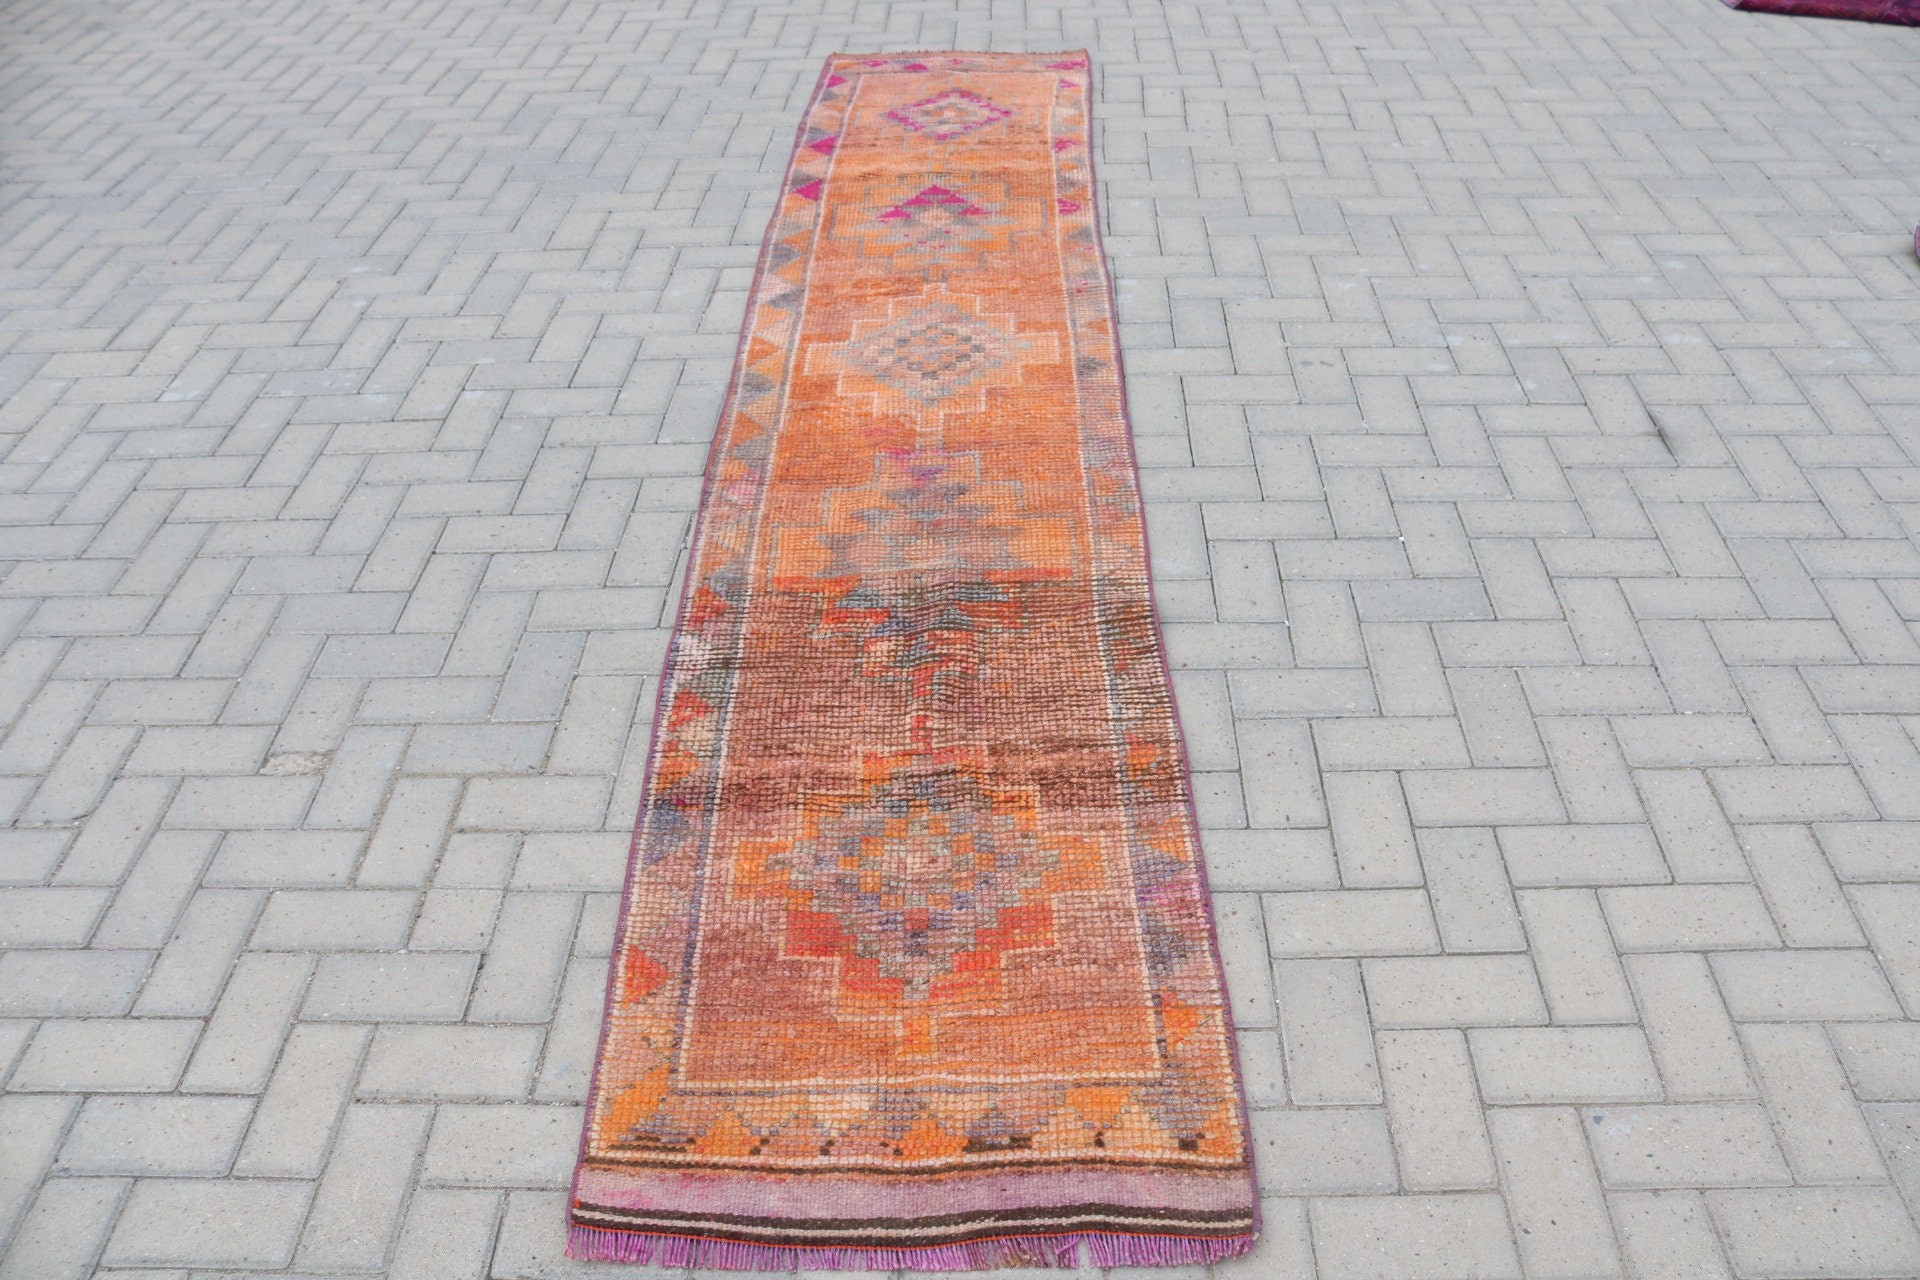 Vintage Rugs, Floor Rugs, Oushak Rug, Rugs for Hallway, Turkish Rugs, Distressed Rug, Antique Rug, Stair Rugs, 2.3x11.6 ft Runner Rug